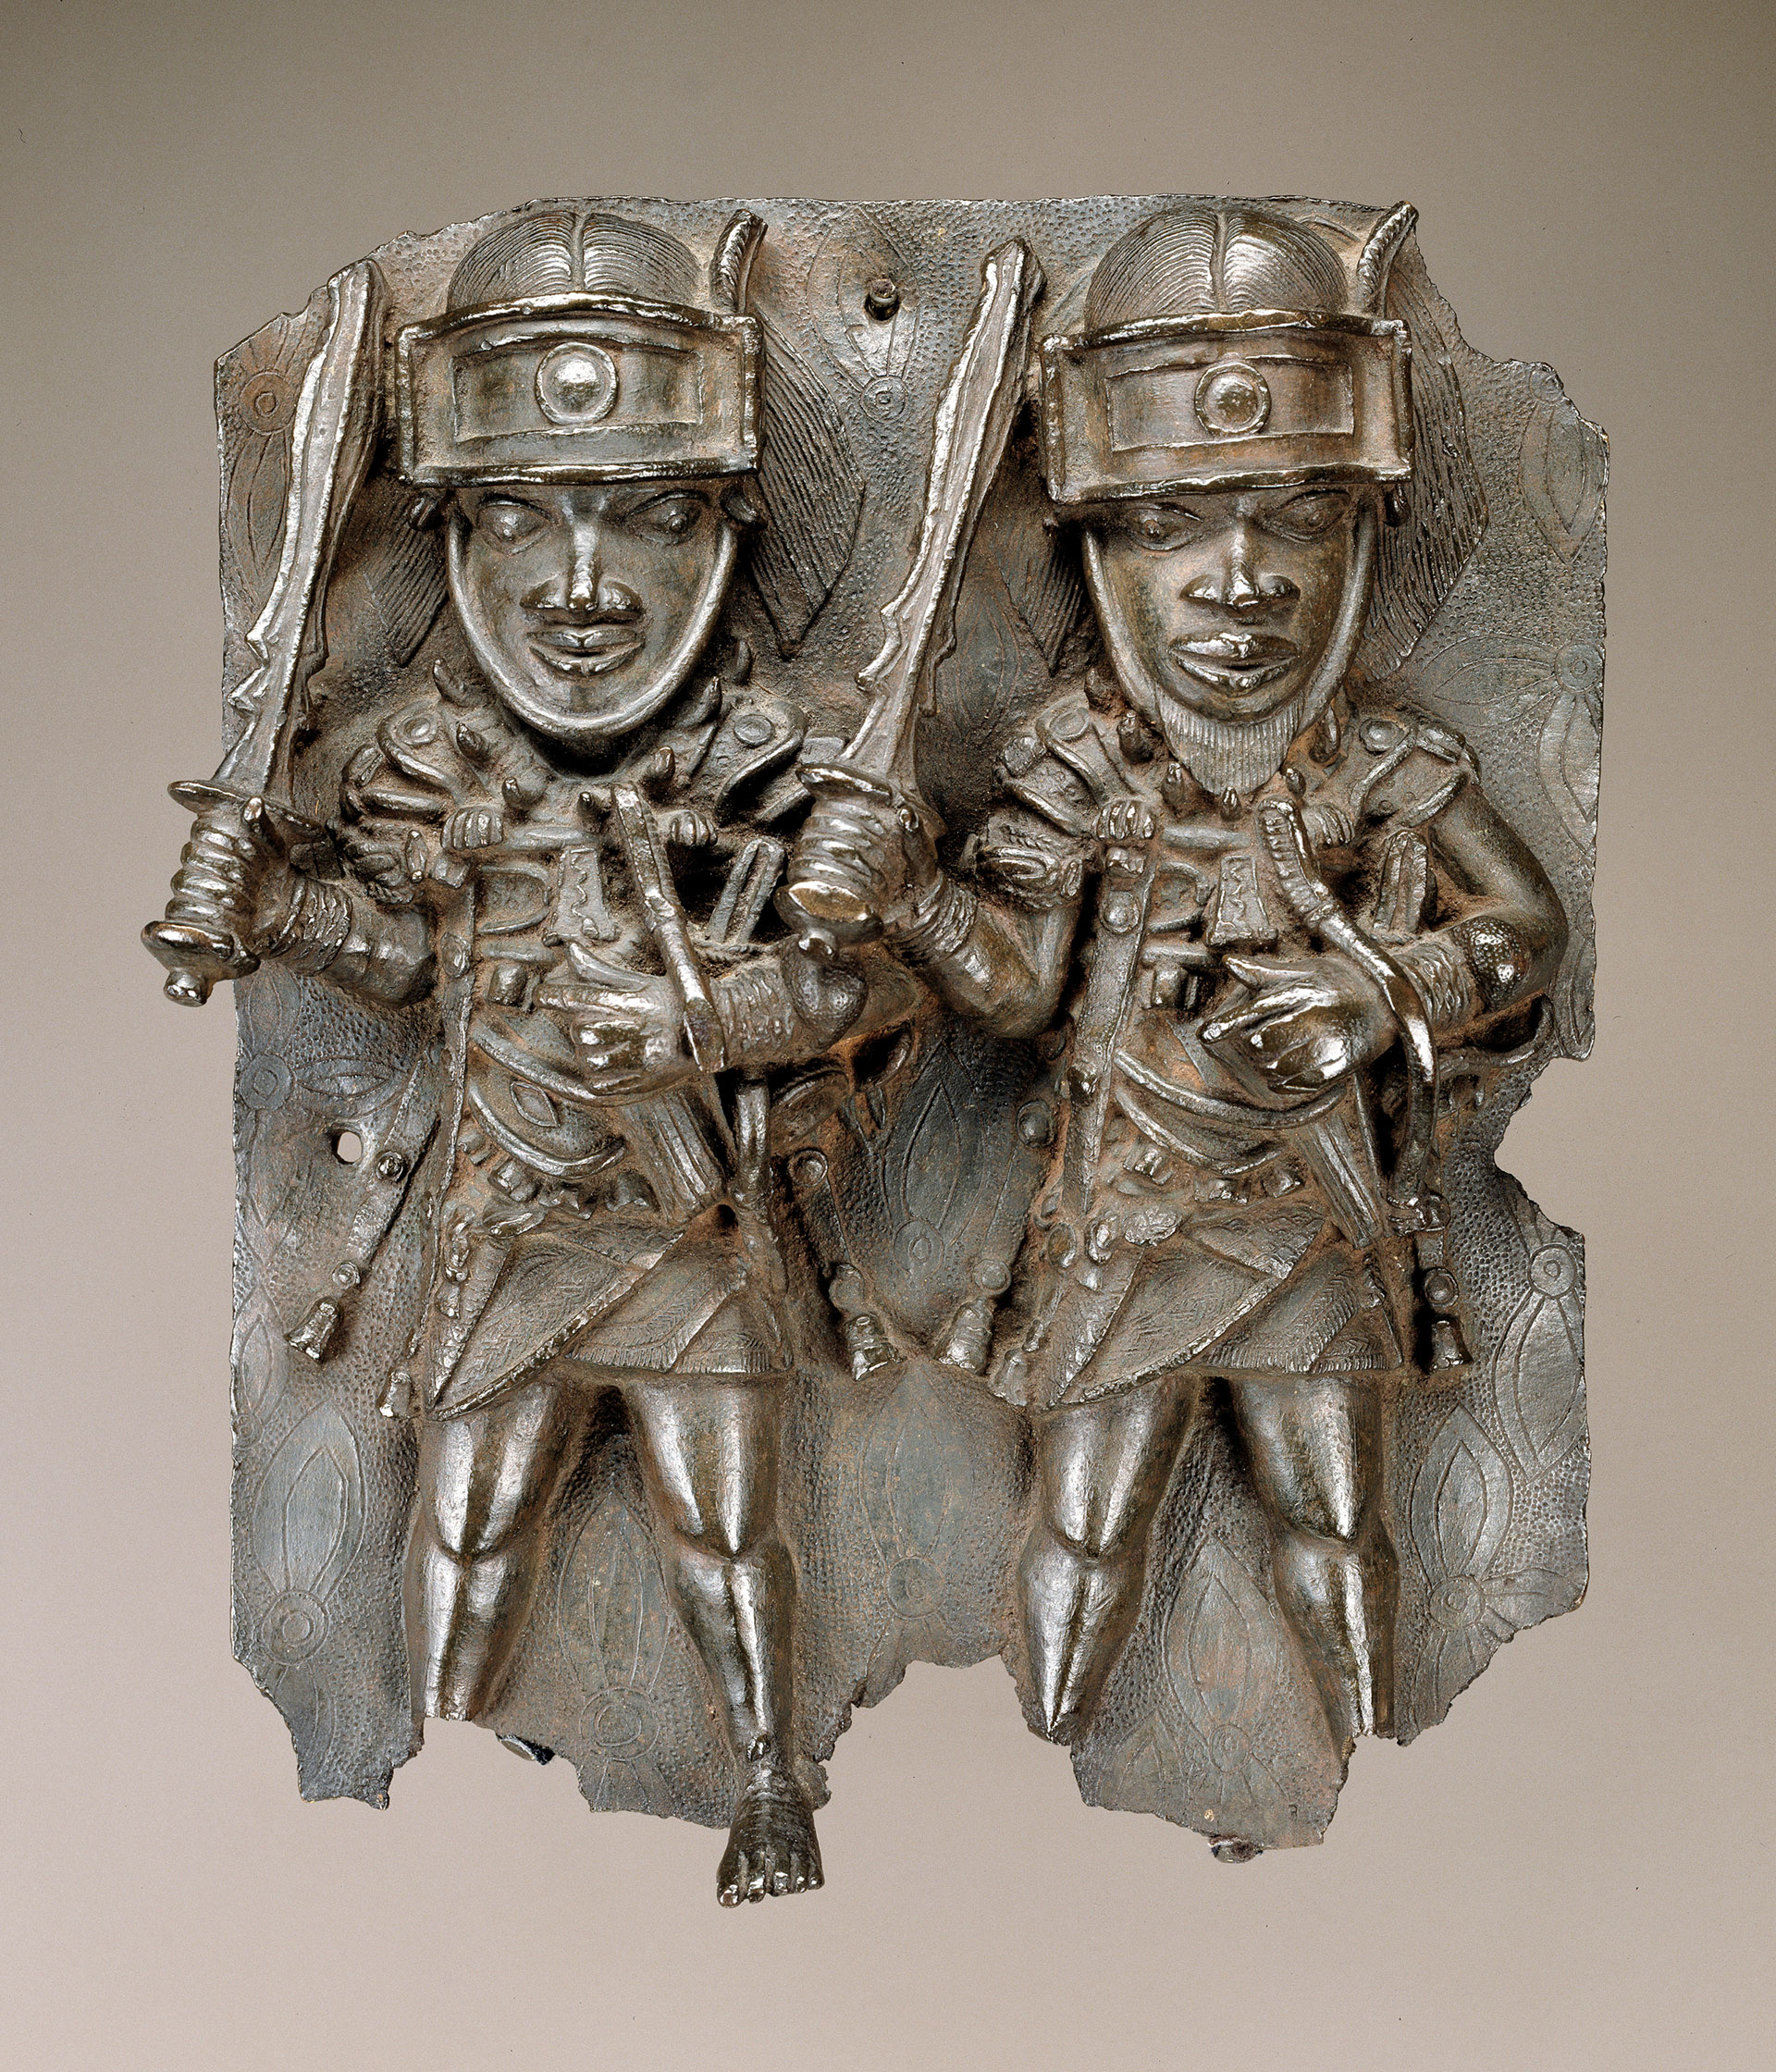 Los llamados "bronces de Benín", que estaban en el Museo Nacional de Arte Africano, ahora devueltos a Nigeria